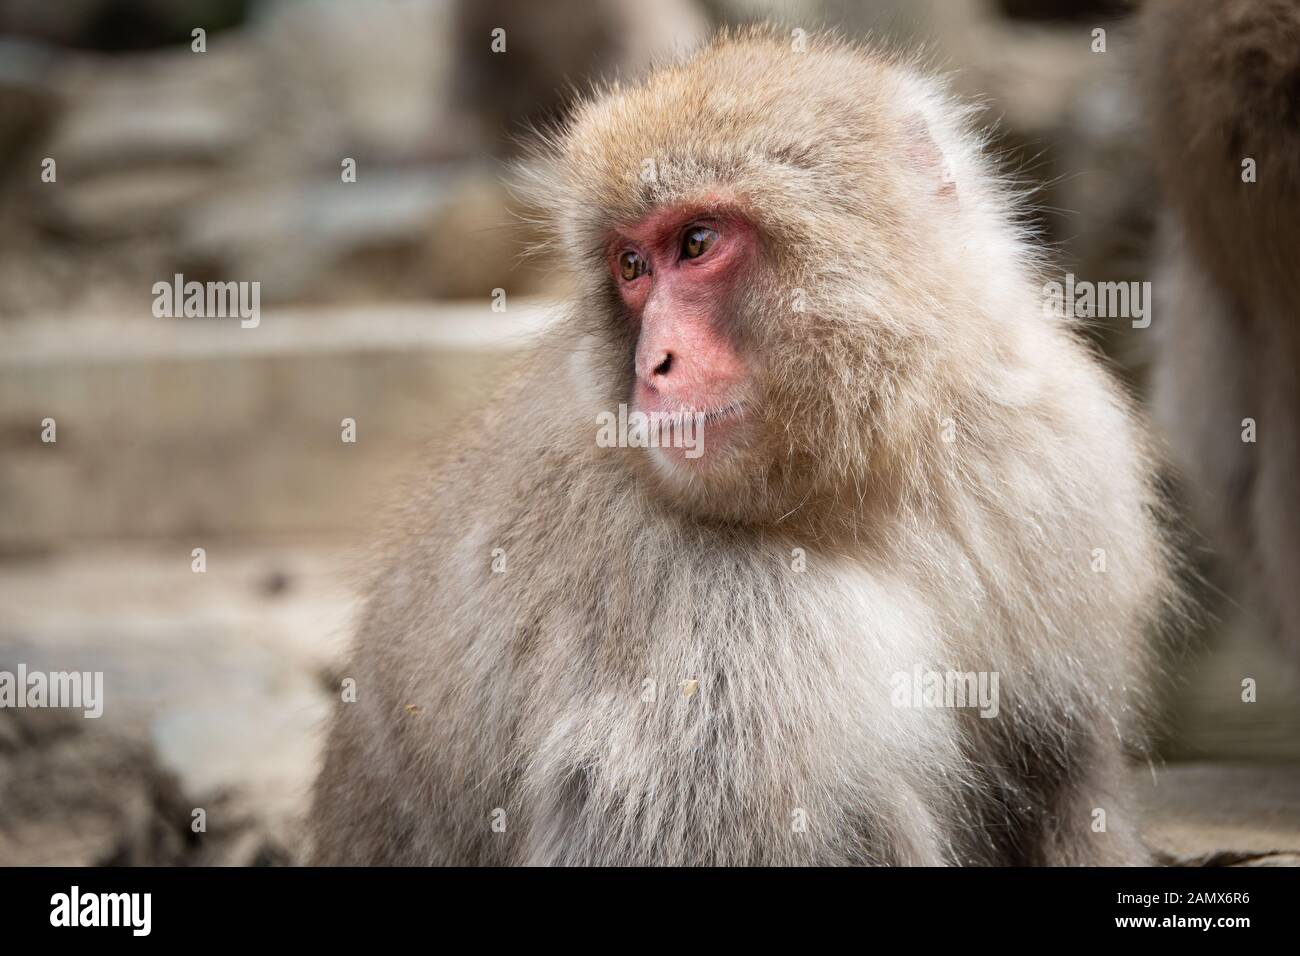 Snow monkey con espressione facciale nel Jigokudani (significa "Hell's Valley") snow monkey park intorno alla molla a caldo Foto Stock